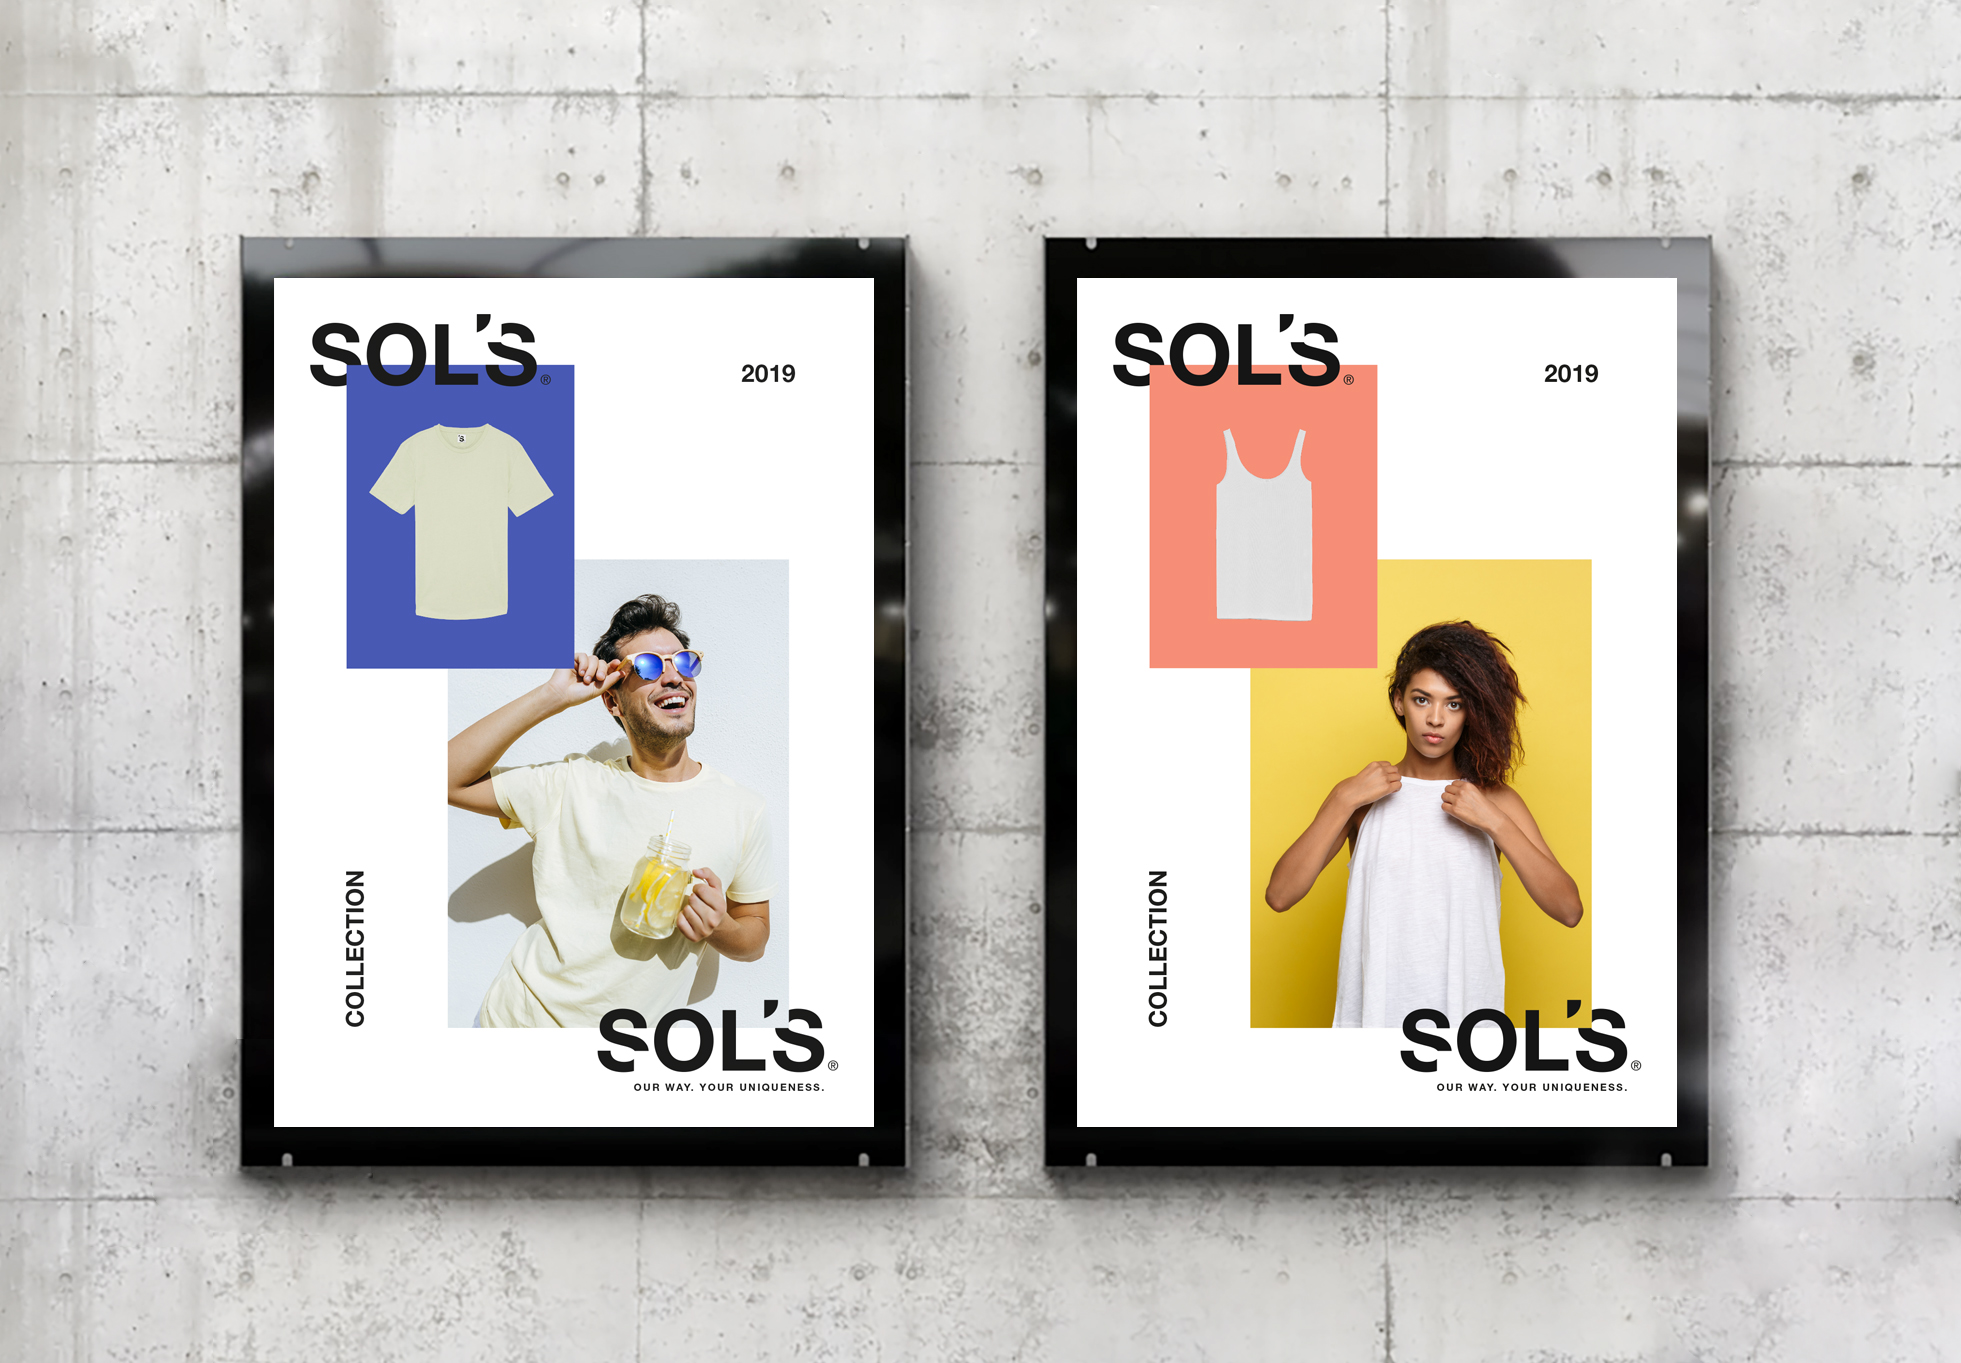 sol's - textile promotionnel - identité visuelle